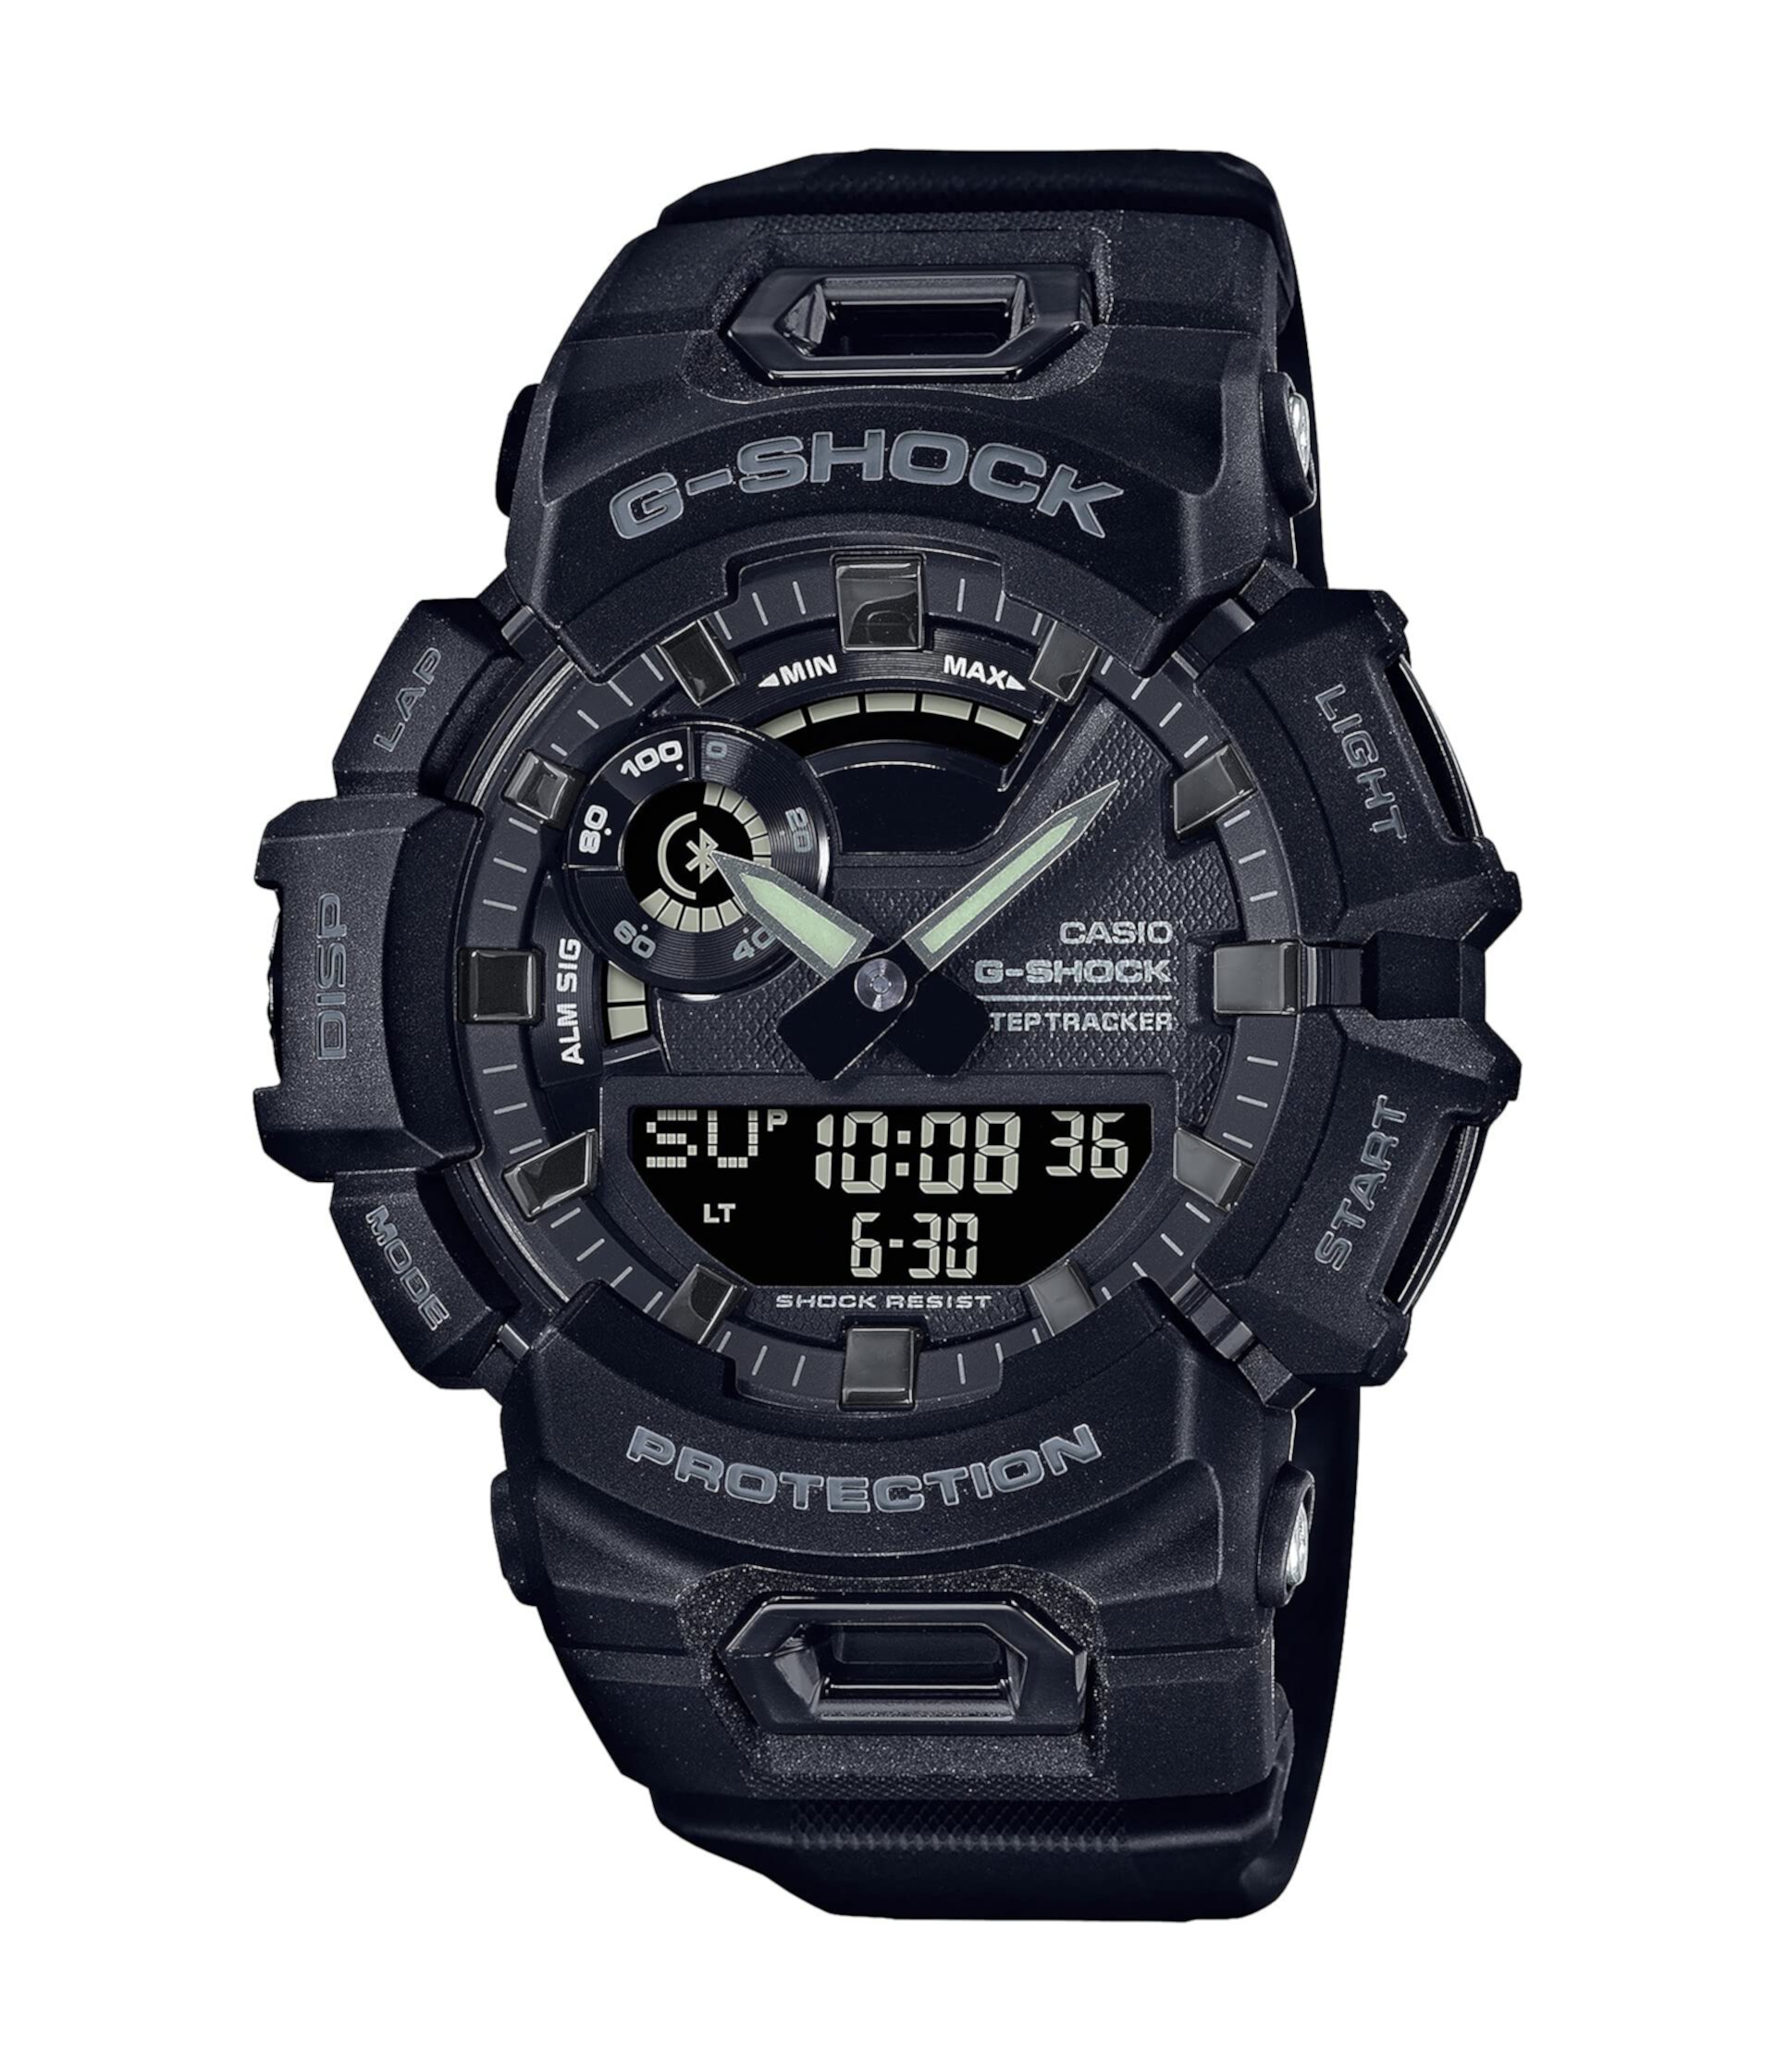 GBA900-1A G-Shock